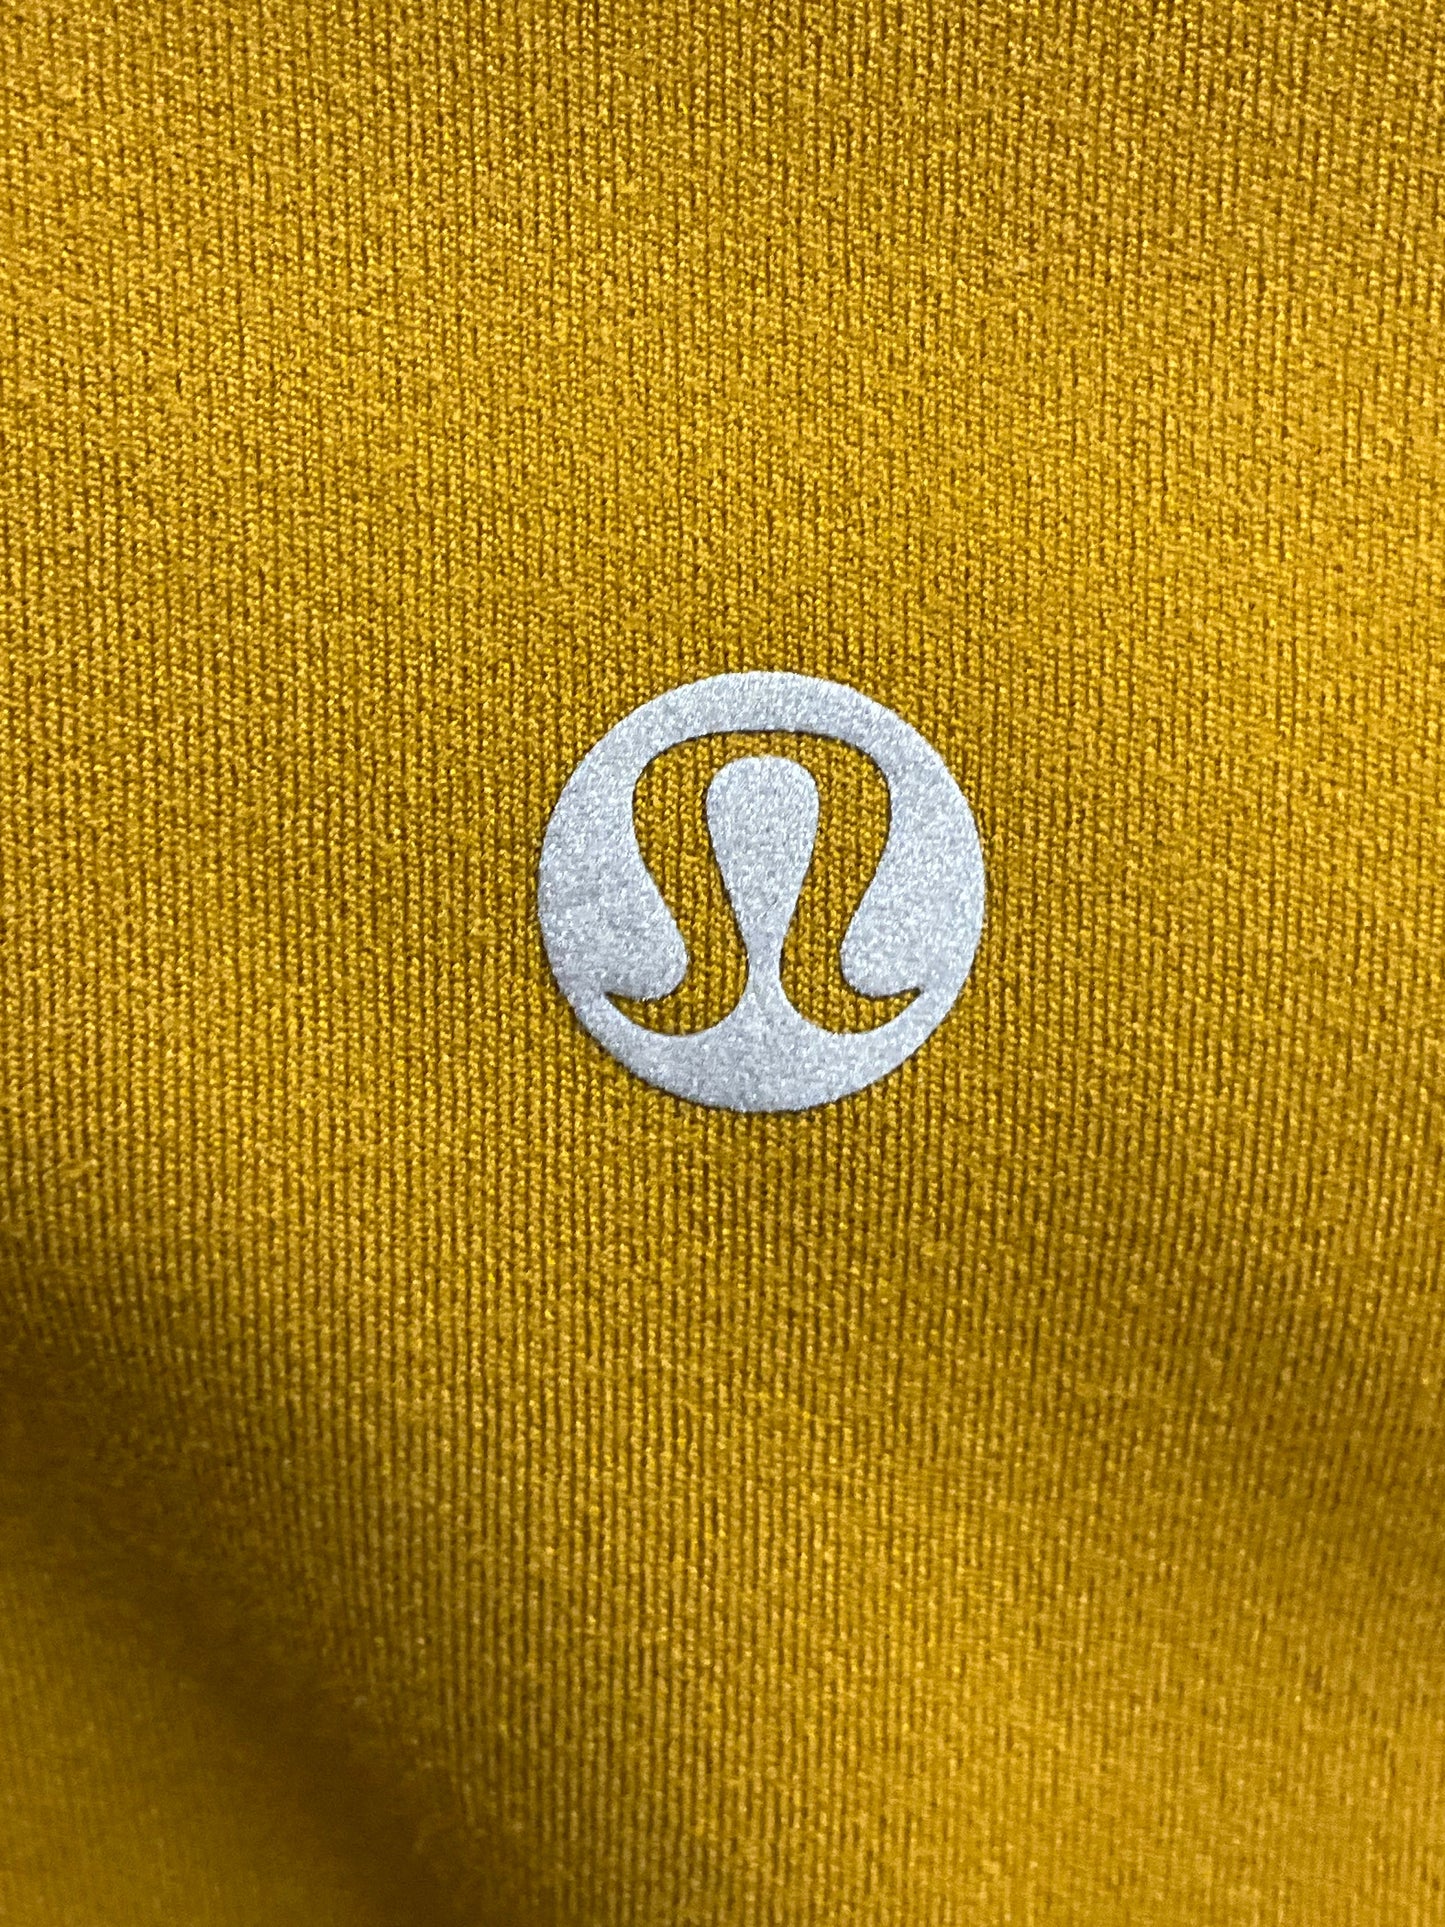 Yellow Athletic Shorts Lululemon, Size S